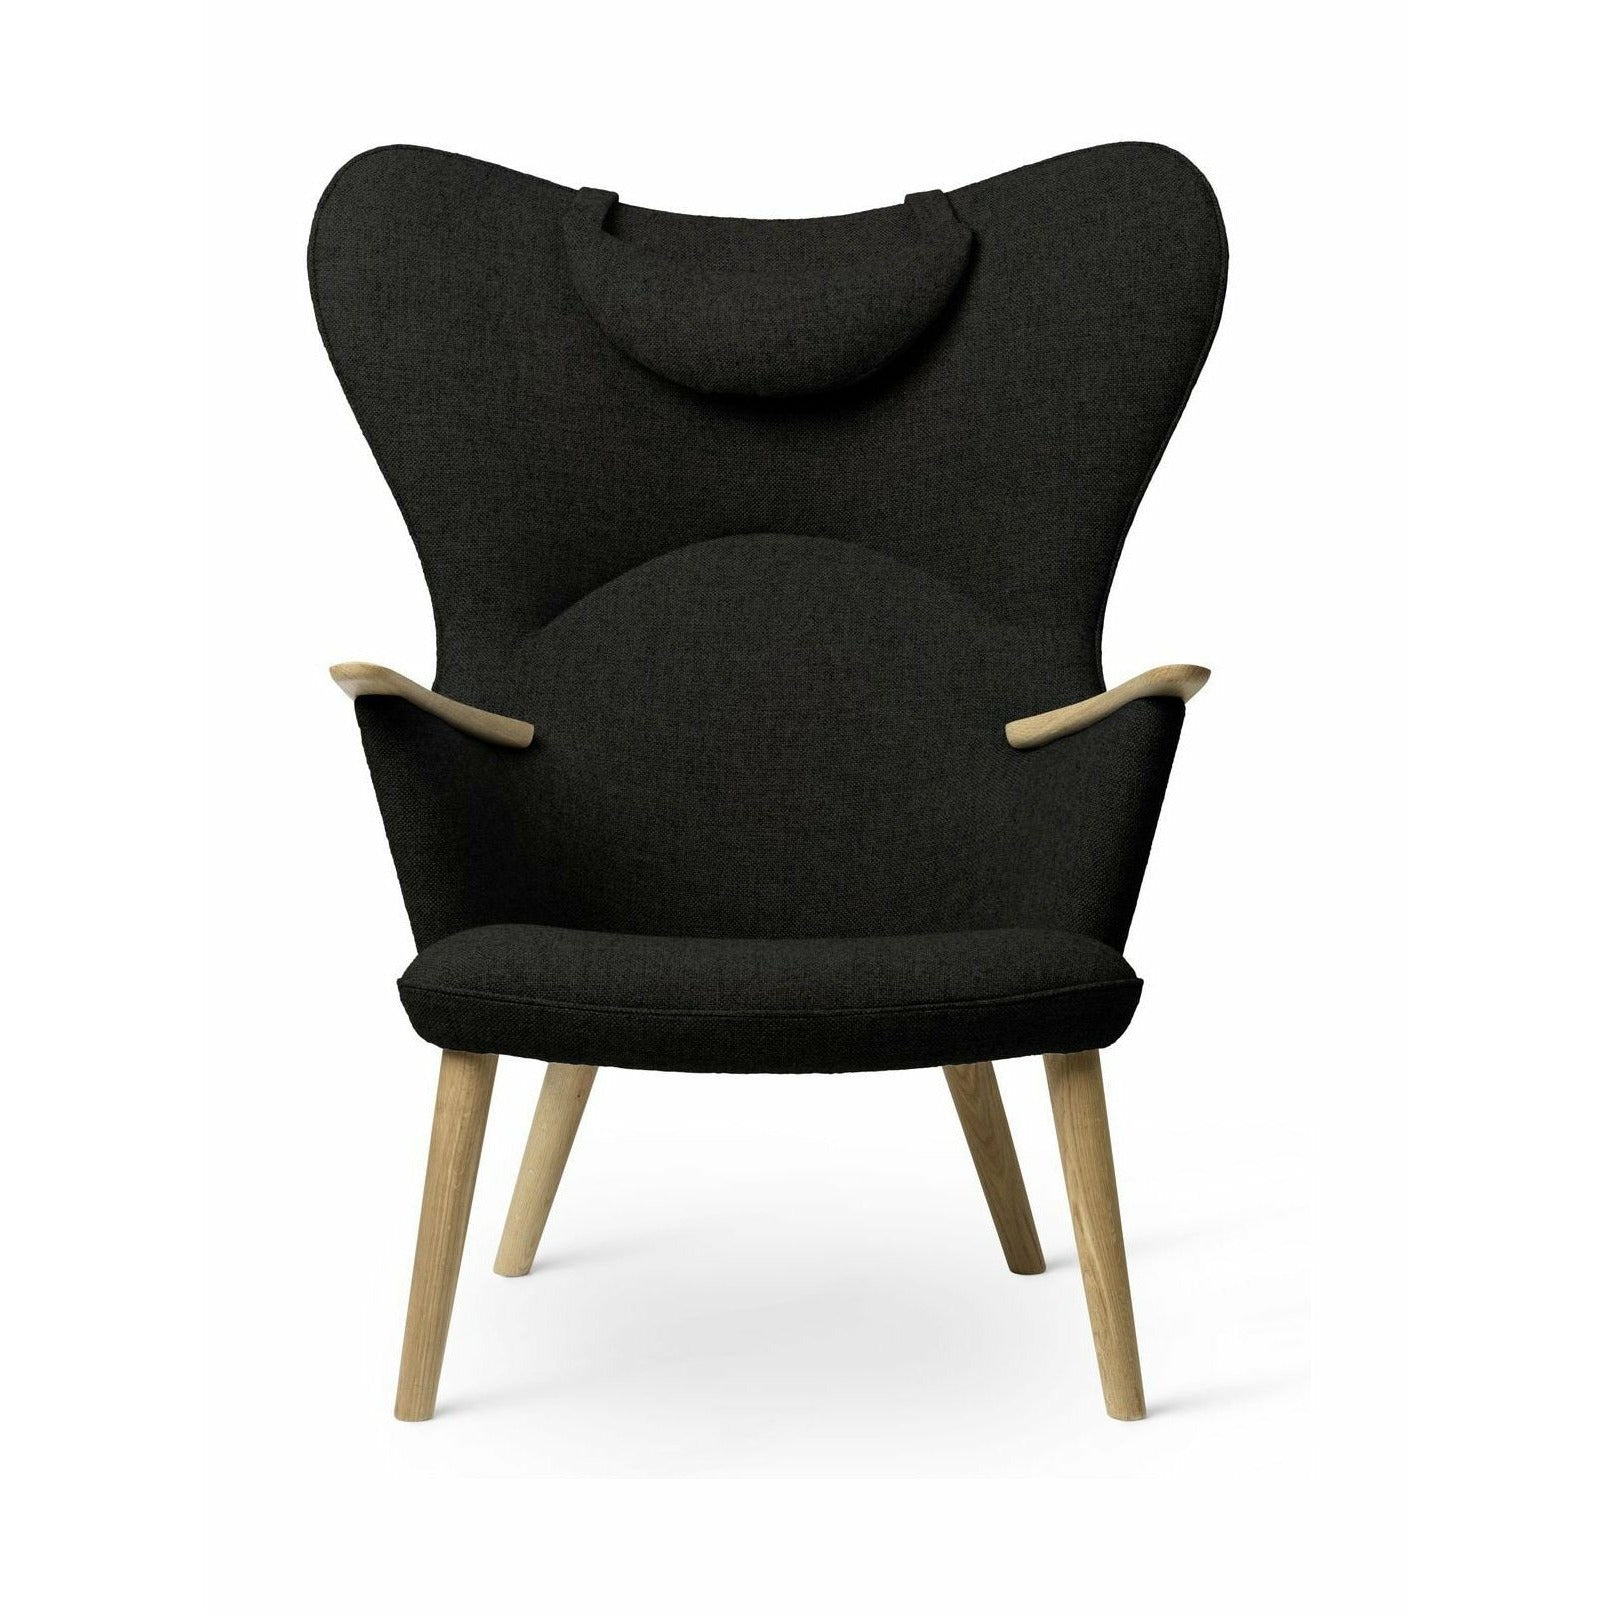 Carl Hansen CH78 Mama Bear Lounge stoel, eiken geolied/donkergroene fiord 0991